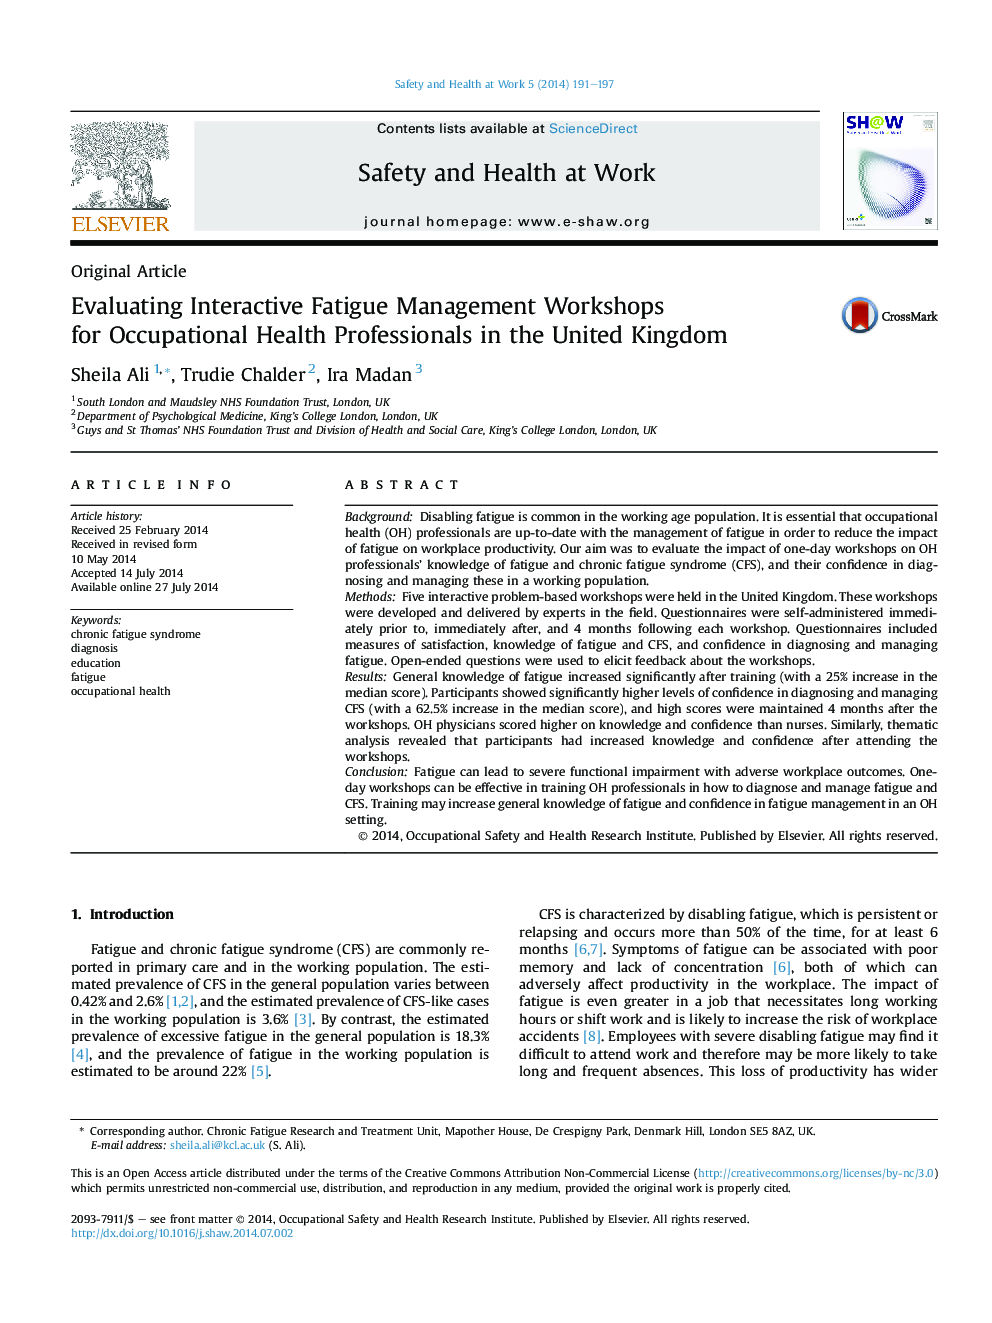 ارزیابی کارگاه های مدیریت خستگی تعاملی برای حرفه ای های بهداشت حرفه ای در انگلستان